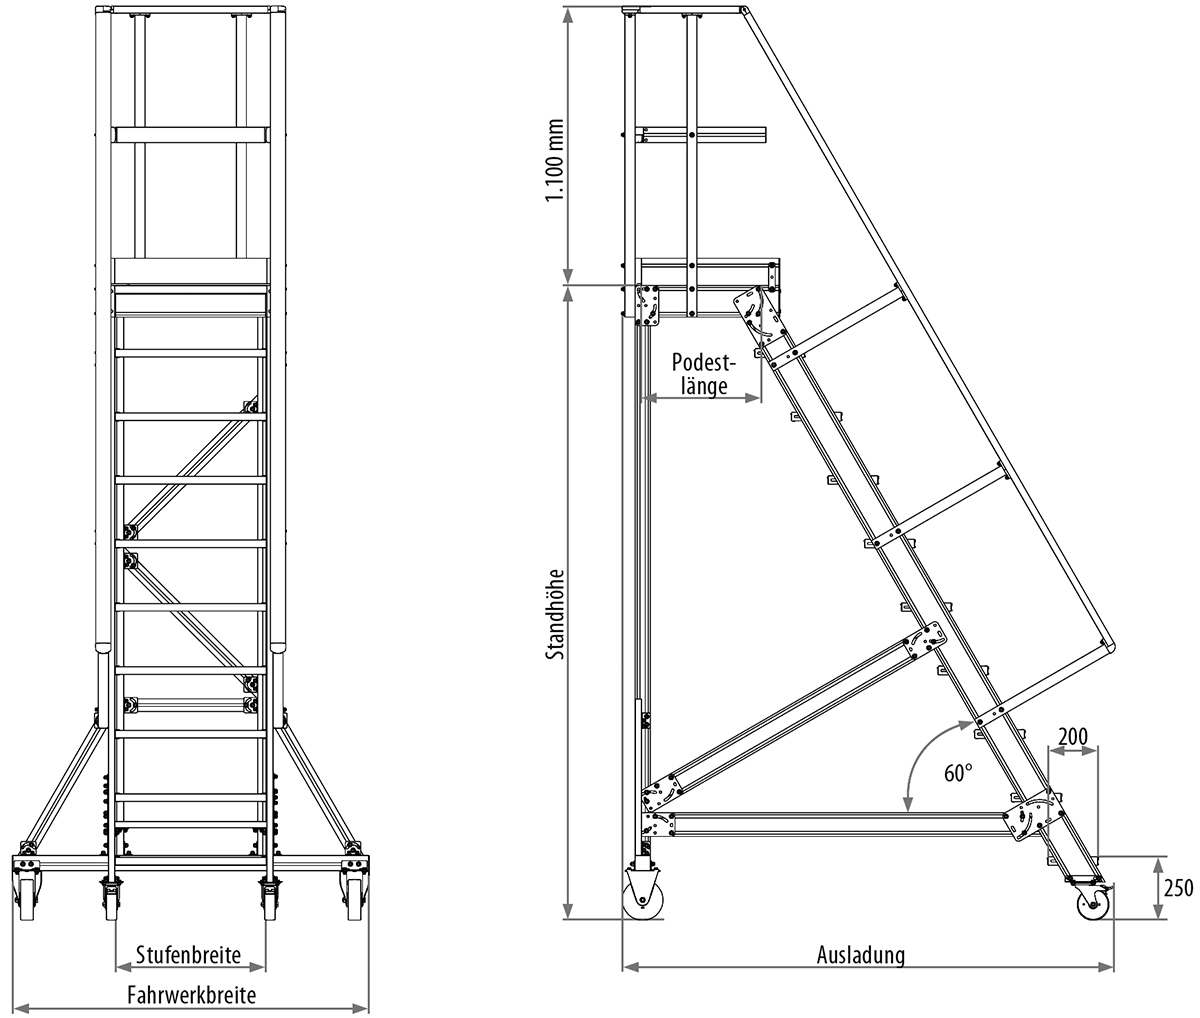 Podesttreppe fahrbar, Treppenneigung 60°, Stufenbreite 800 mm - 5 Stufen